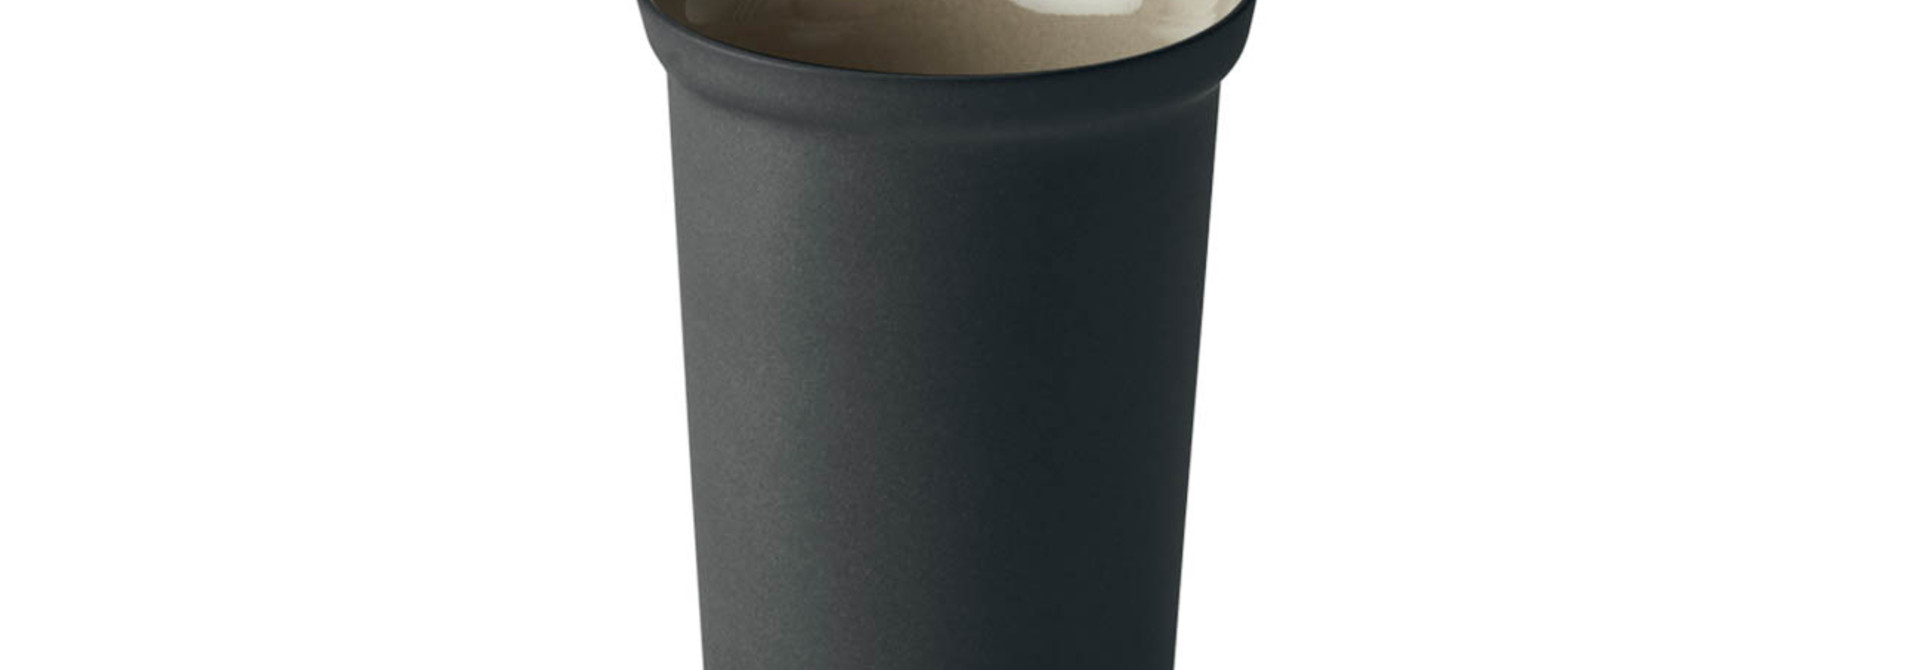 Espresso Water Cup - Black&Rock -Esma Dereboy 6X6X8.5 cm